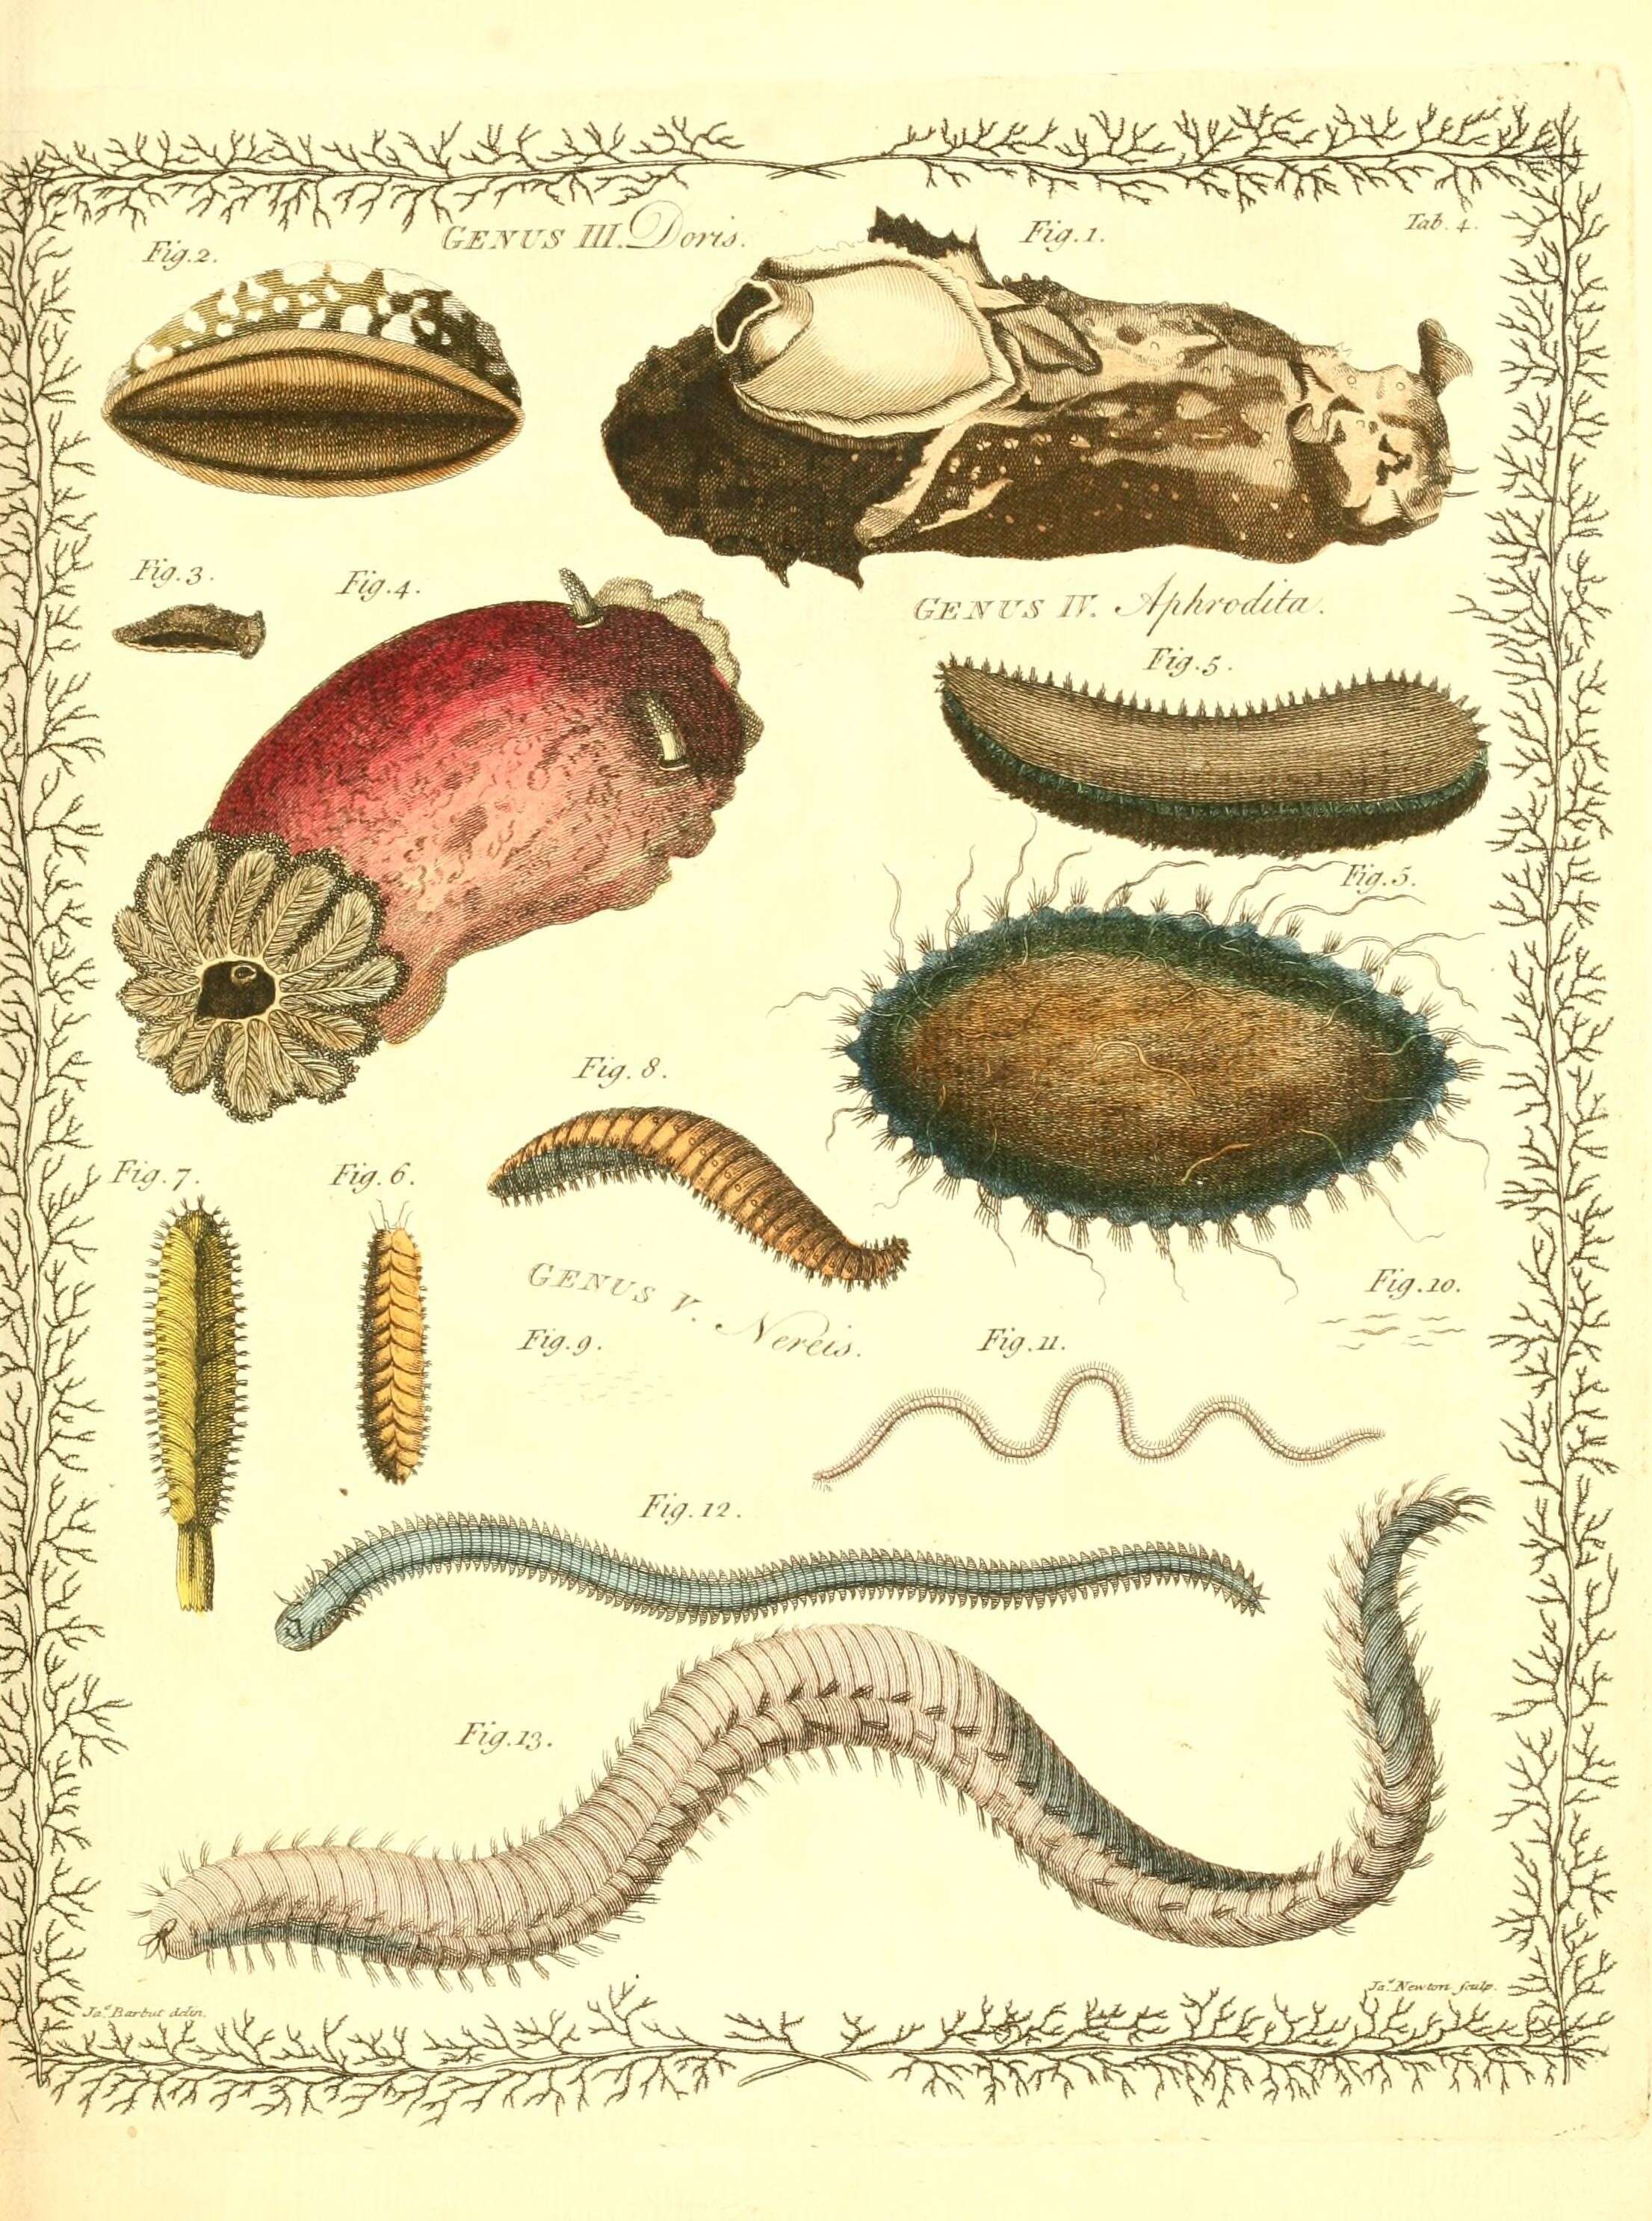 Sivun Doris verrucosa Linnaeus 1758 kuva